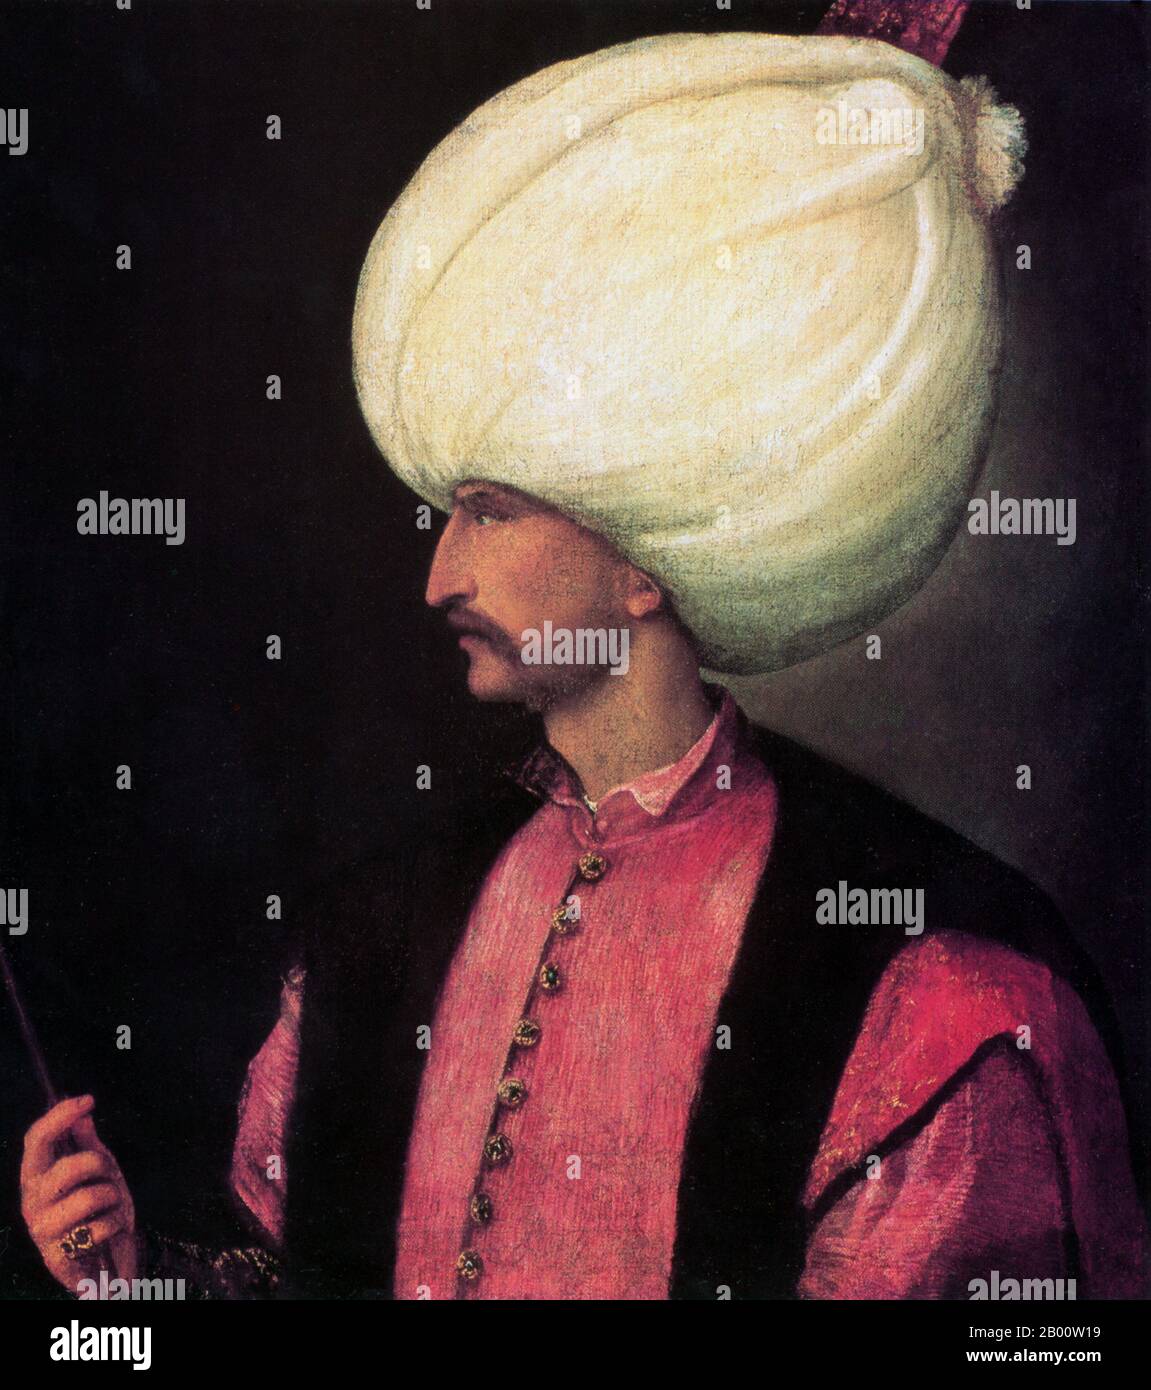 Turquie : un portrait de Suleyman le magnifique, attribué au peintre italien Titien (1488/1490-1576), c. 1530. Sultan Suleyman I (1494-1566), également connu sous le nom de 'Suleyman le magnifique' et 'Suleyman le législateur', était le 10e et le plus long sultan régnant de l'empire ottoman. Il a personnellement dirigé ses armées pour conquérir la Transylvanie, la Caspienne, une grande partie du Moyen-Orient et le Maghreb. Il a introduit des réformes radicales de la législation turque, de l'éducation, de la fiscalité et du droit pénal, et a été très respecté en tant que poète et orfèvre. Suleyman a également supervisé un âge d'or dans le développement des arts Banque D'Images